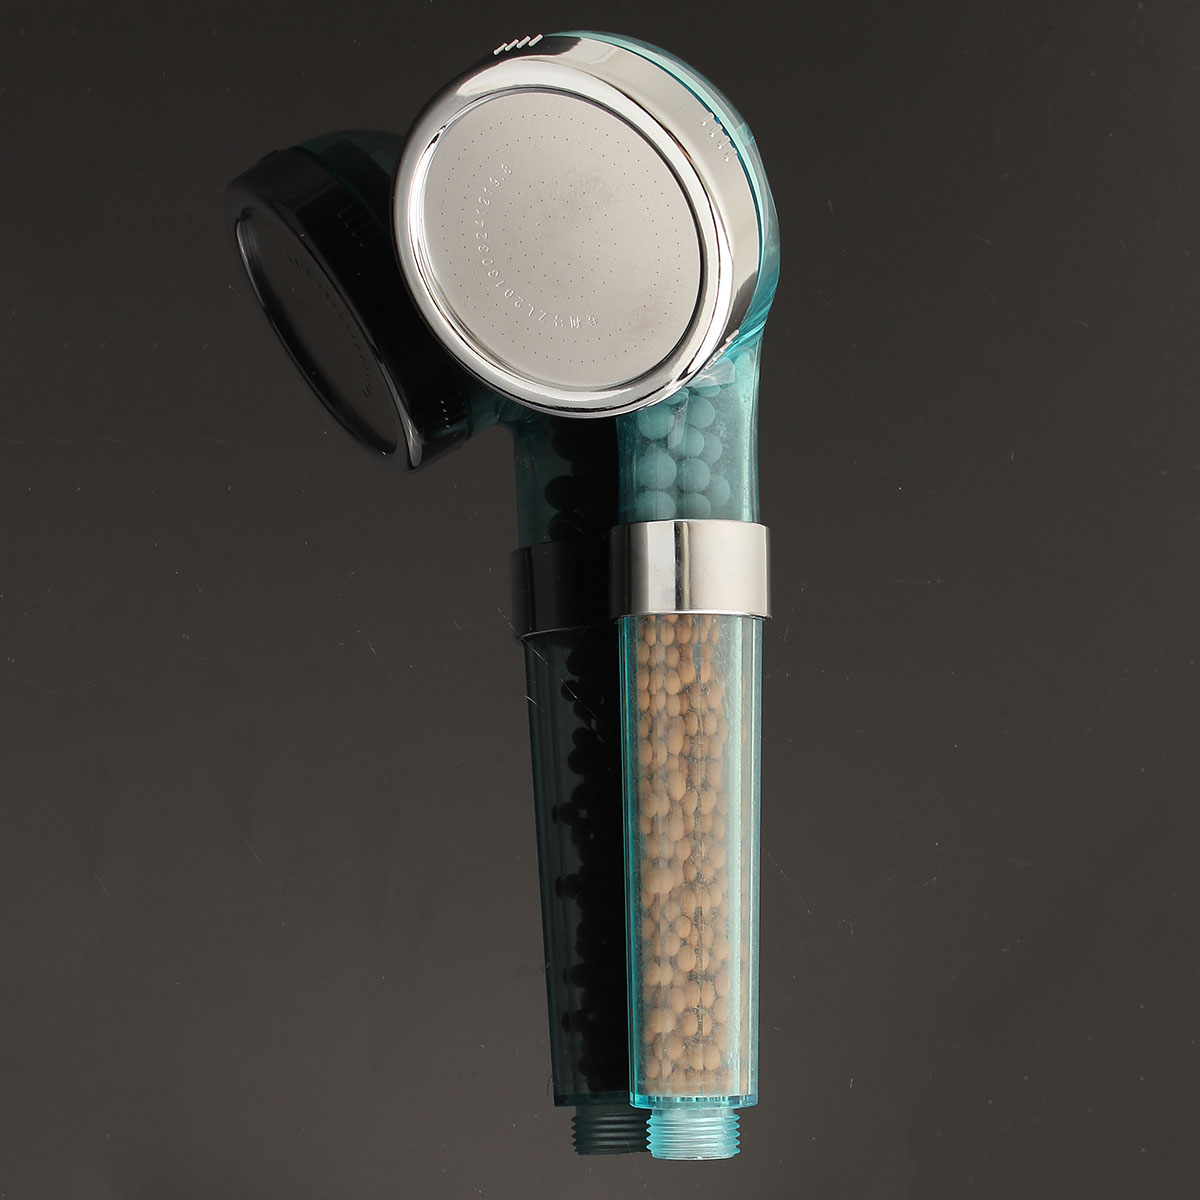 Handheld-Negative-Ion-SPA-Pressurize-Shower-Head-Bathroom-Healthy-Water-Saving-Spray-Nozzle-1093059